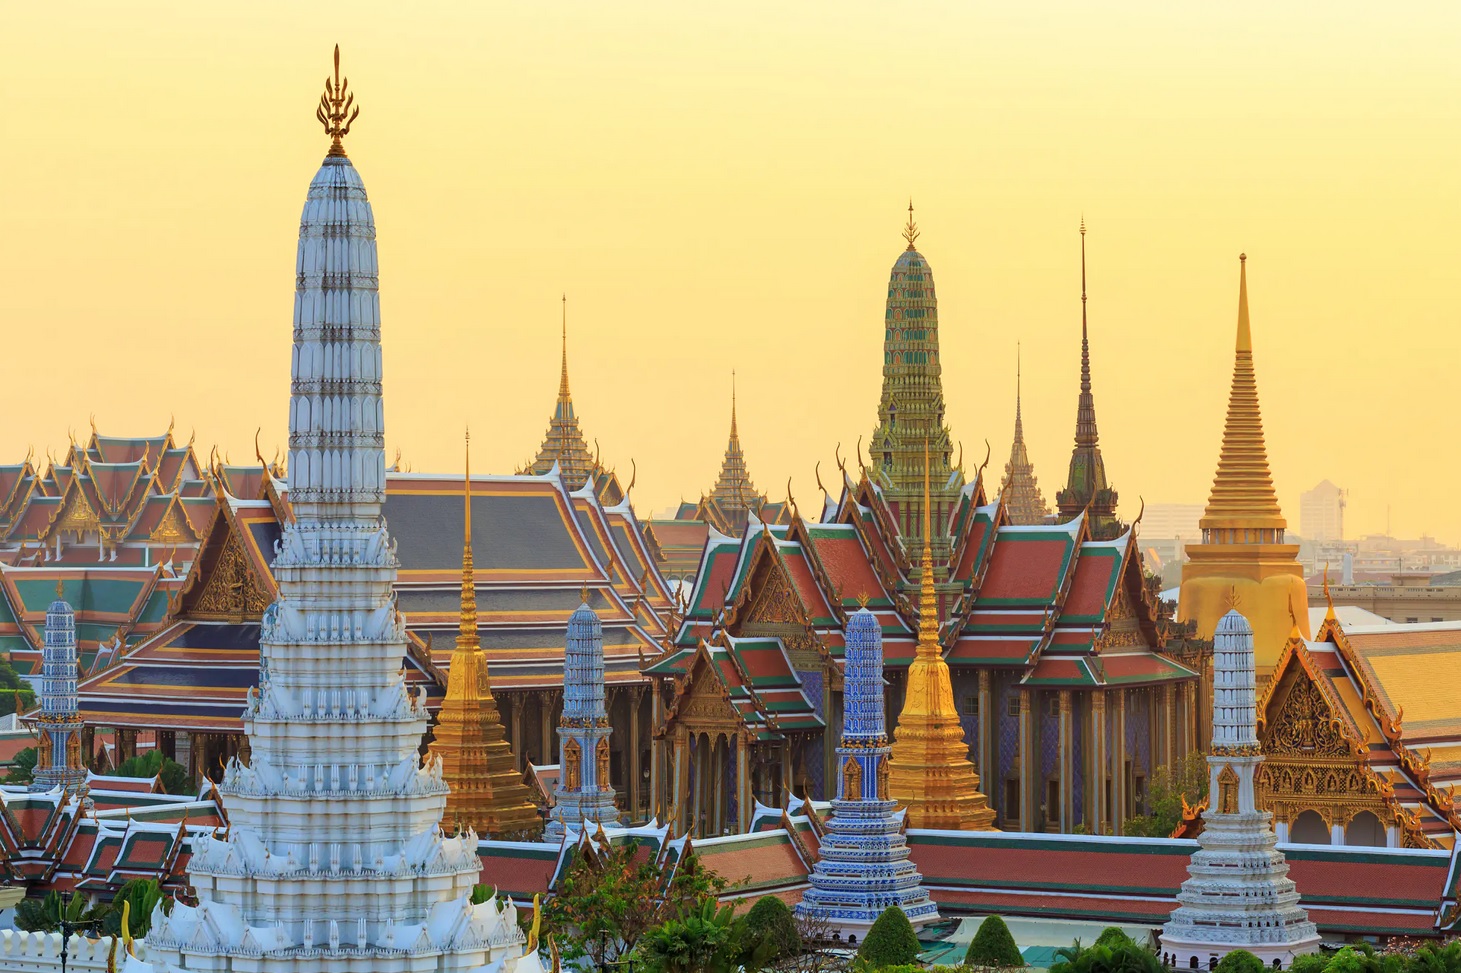 http://mrlinhadventure.com/fr/destinations-en-thaïlande/centre-de-la-thaïlande/central-thailand-overview.aspx